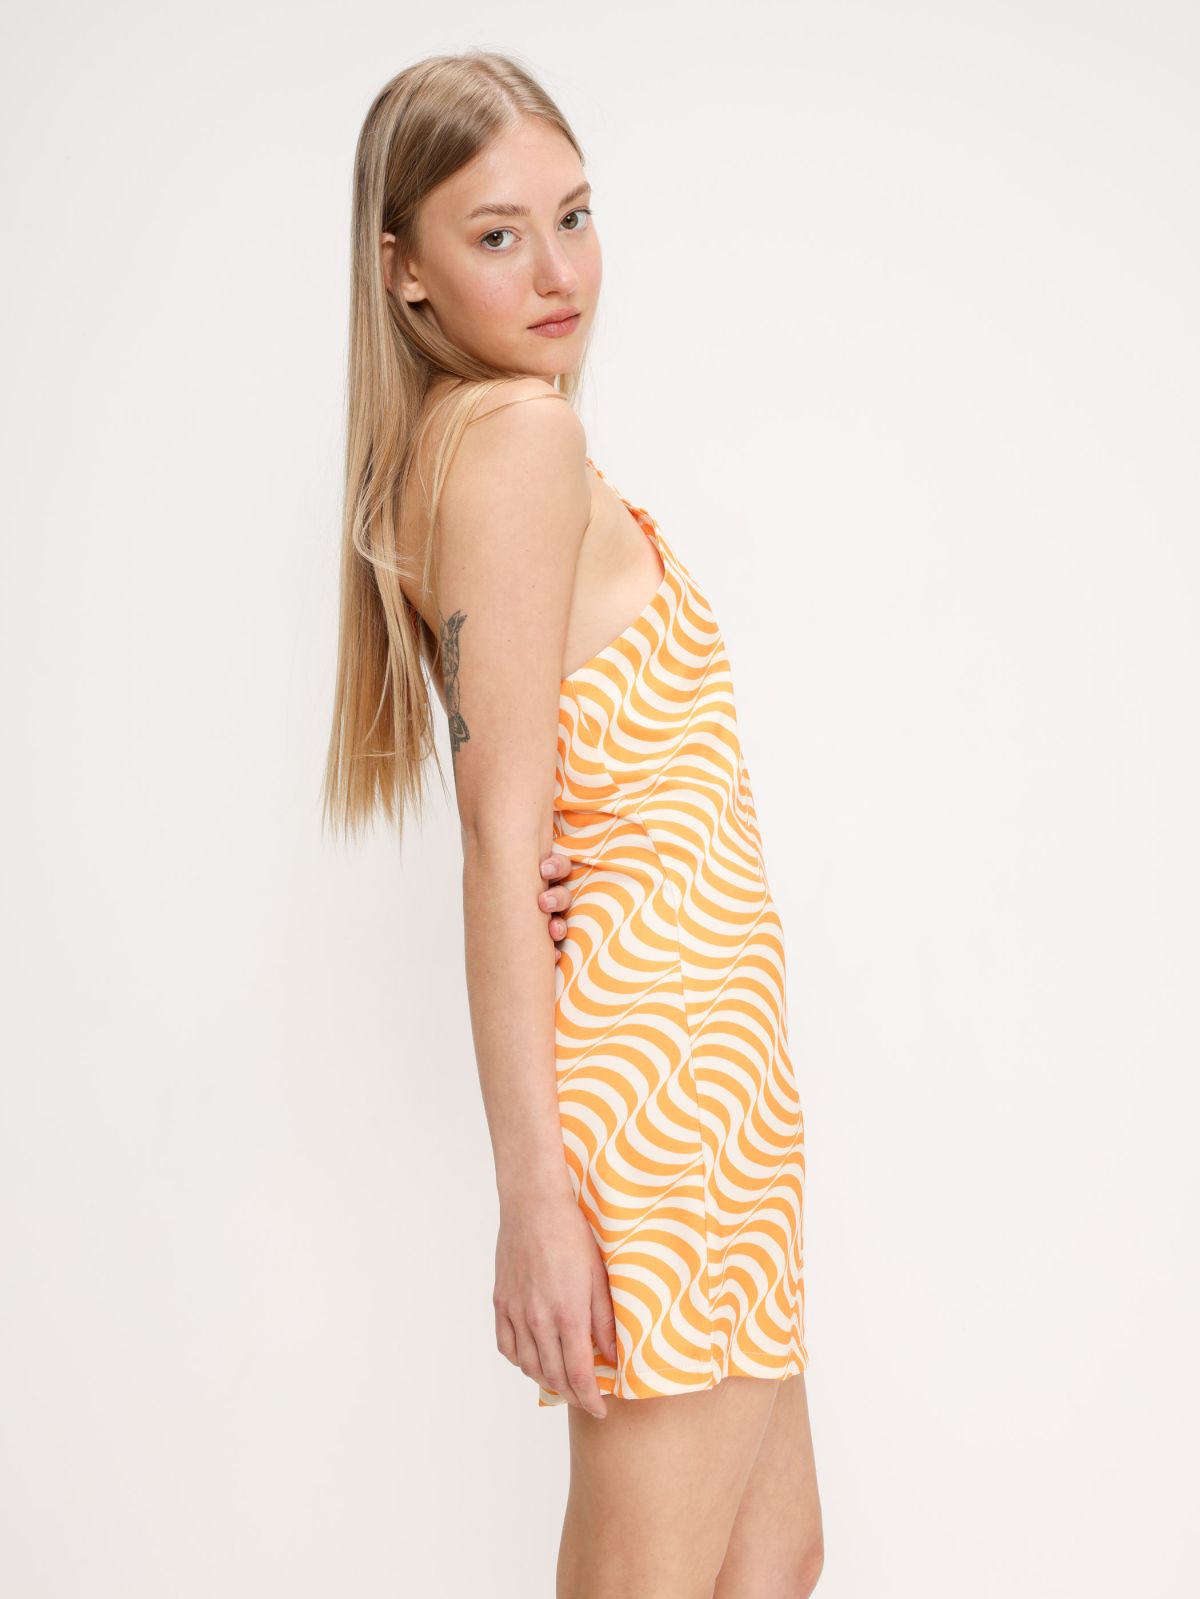  שמלת מיני קולר בהדפס גלים של TERMINAL X